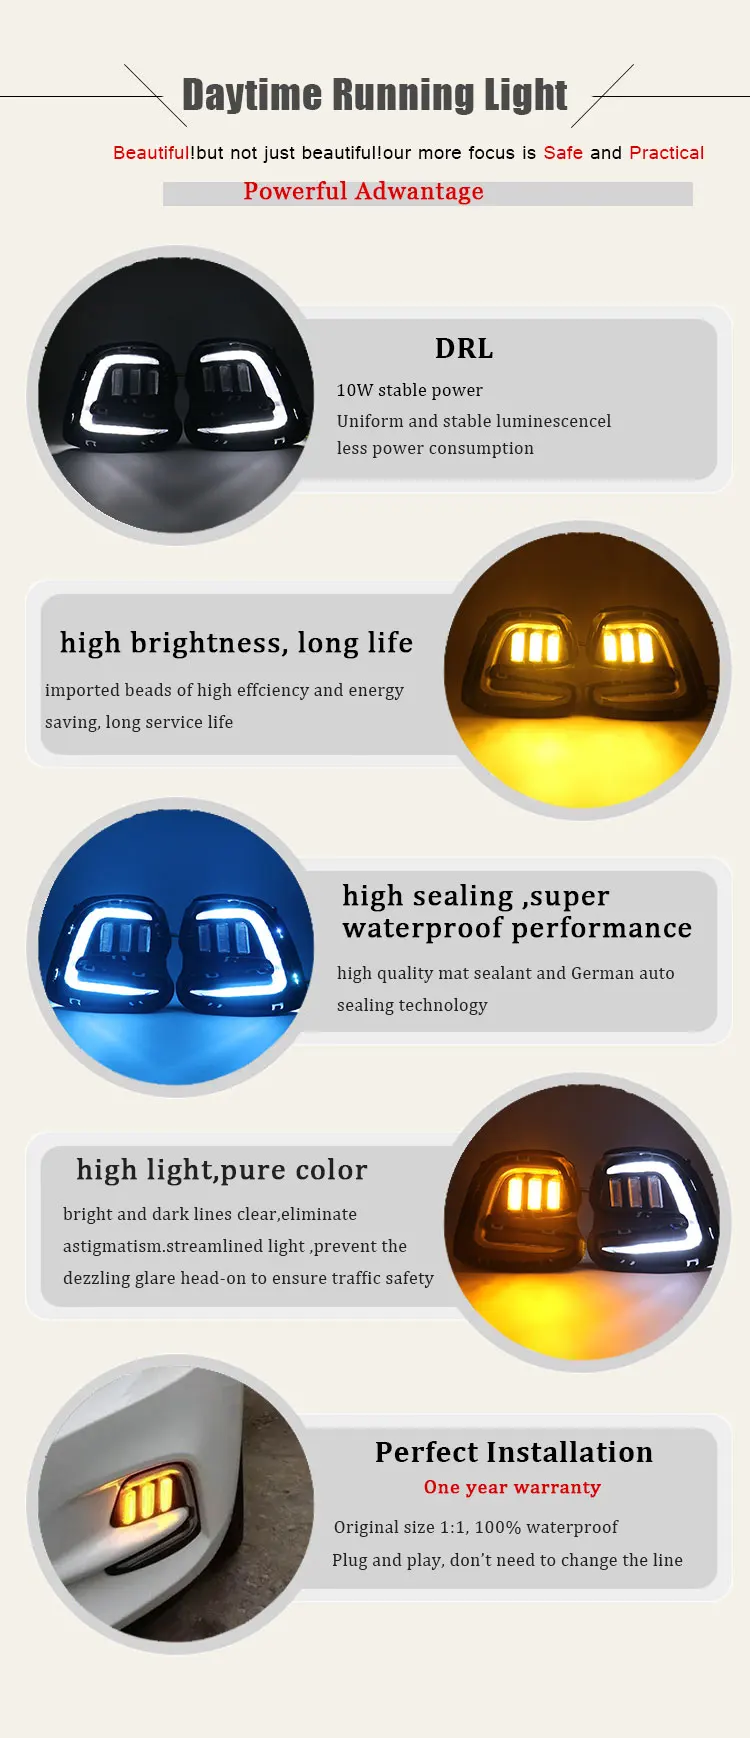 2 шт. стайлинга автомобилей ультра яркий светодиодный дневные ходовые огни для Chevrolet Cavalier- Водонепроницаемый автомобиль DRL светодиодный фонарь